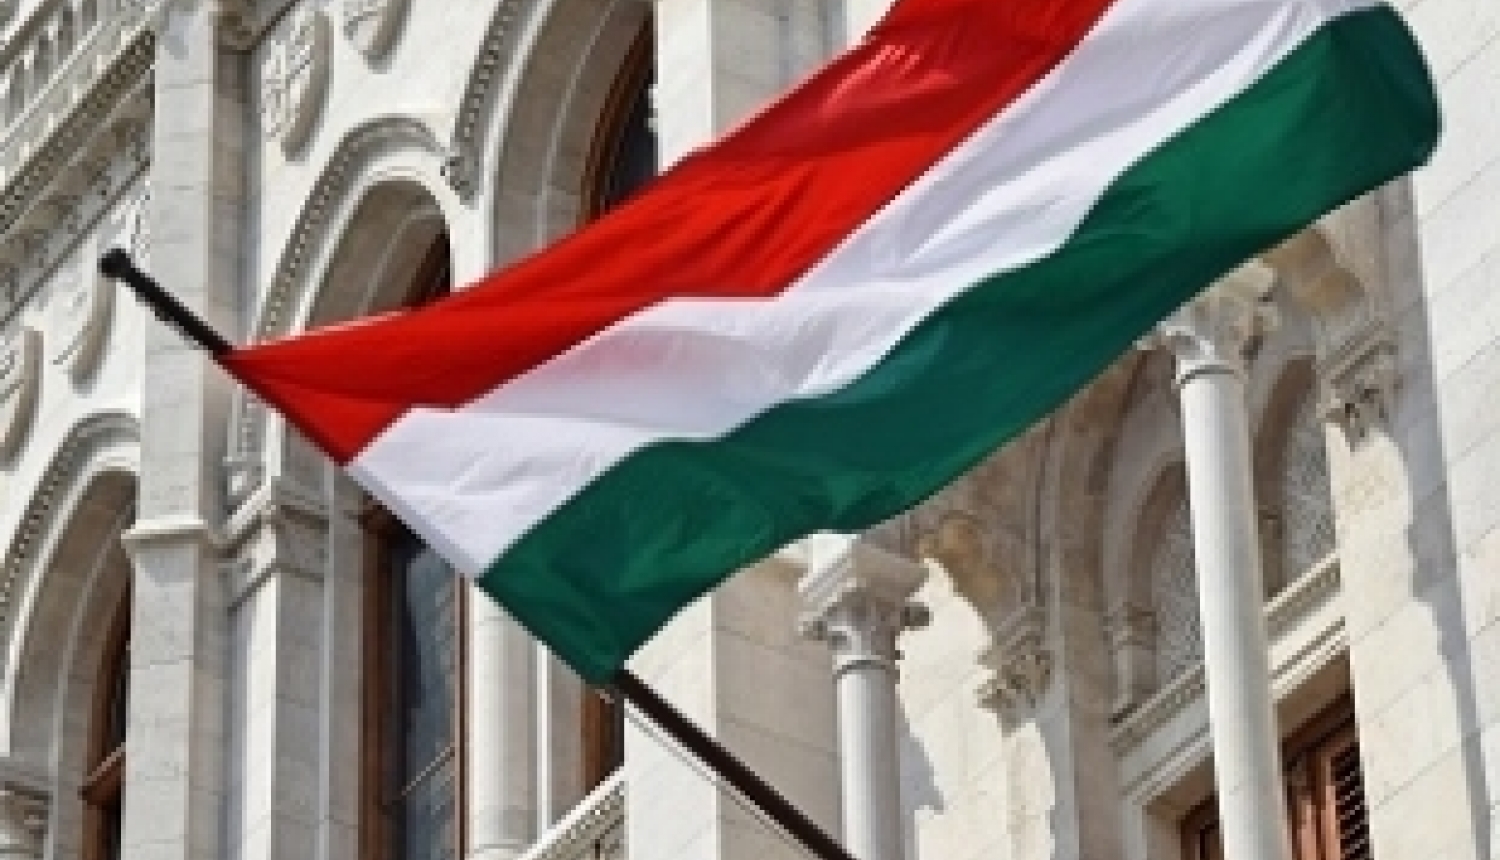 Ungārijas valsts stipendijas dalībai ungāru valodas vasaras kursos